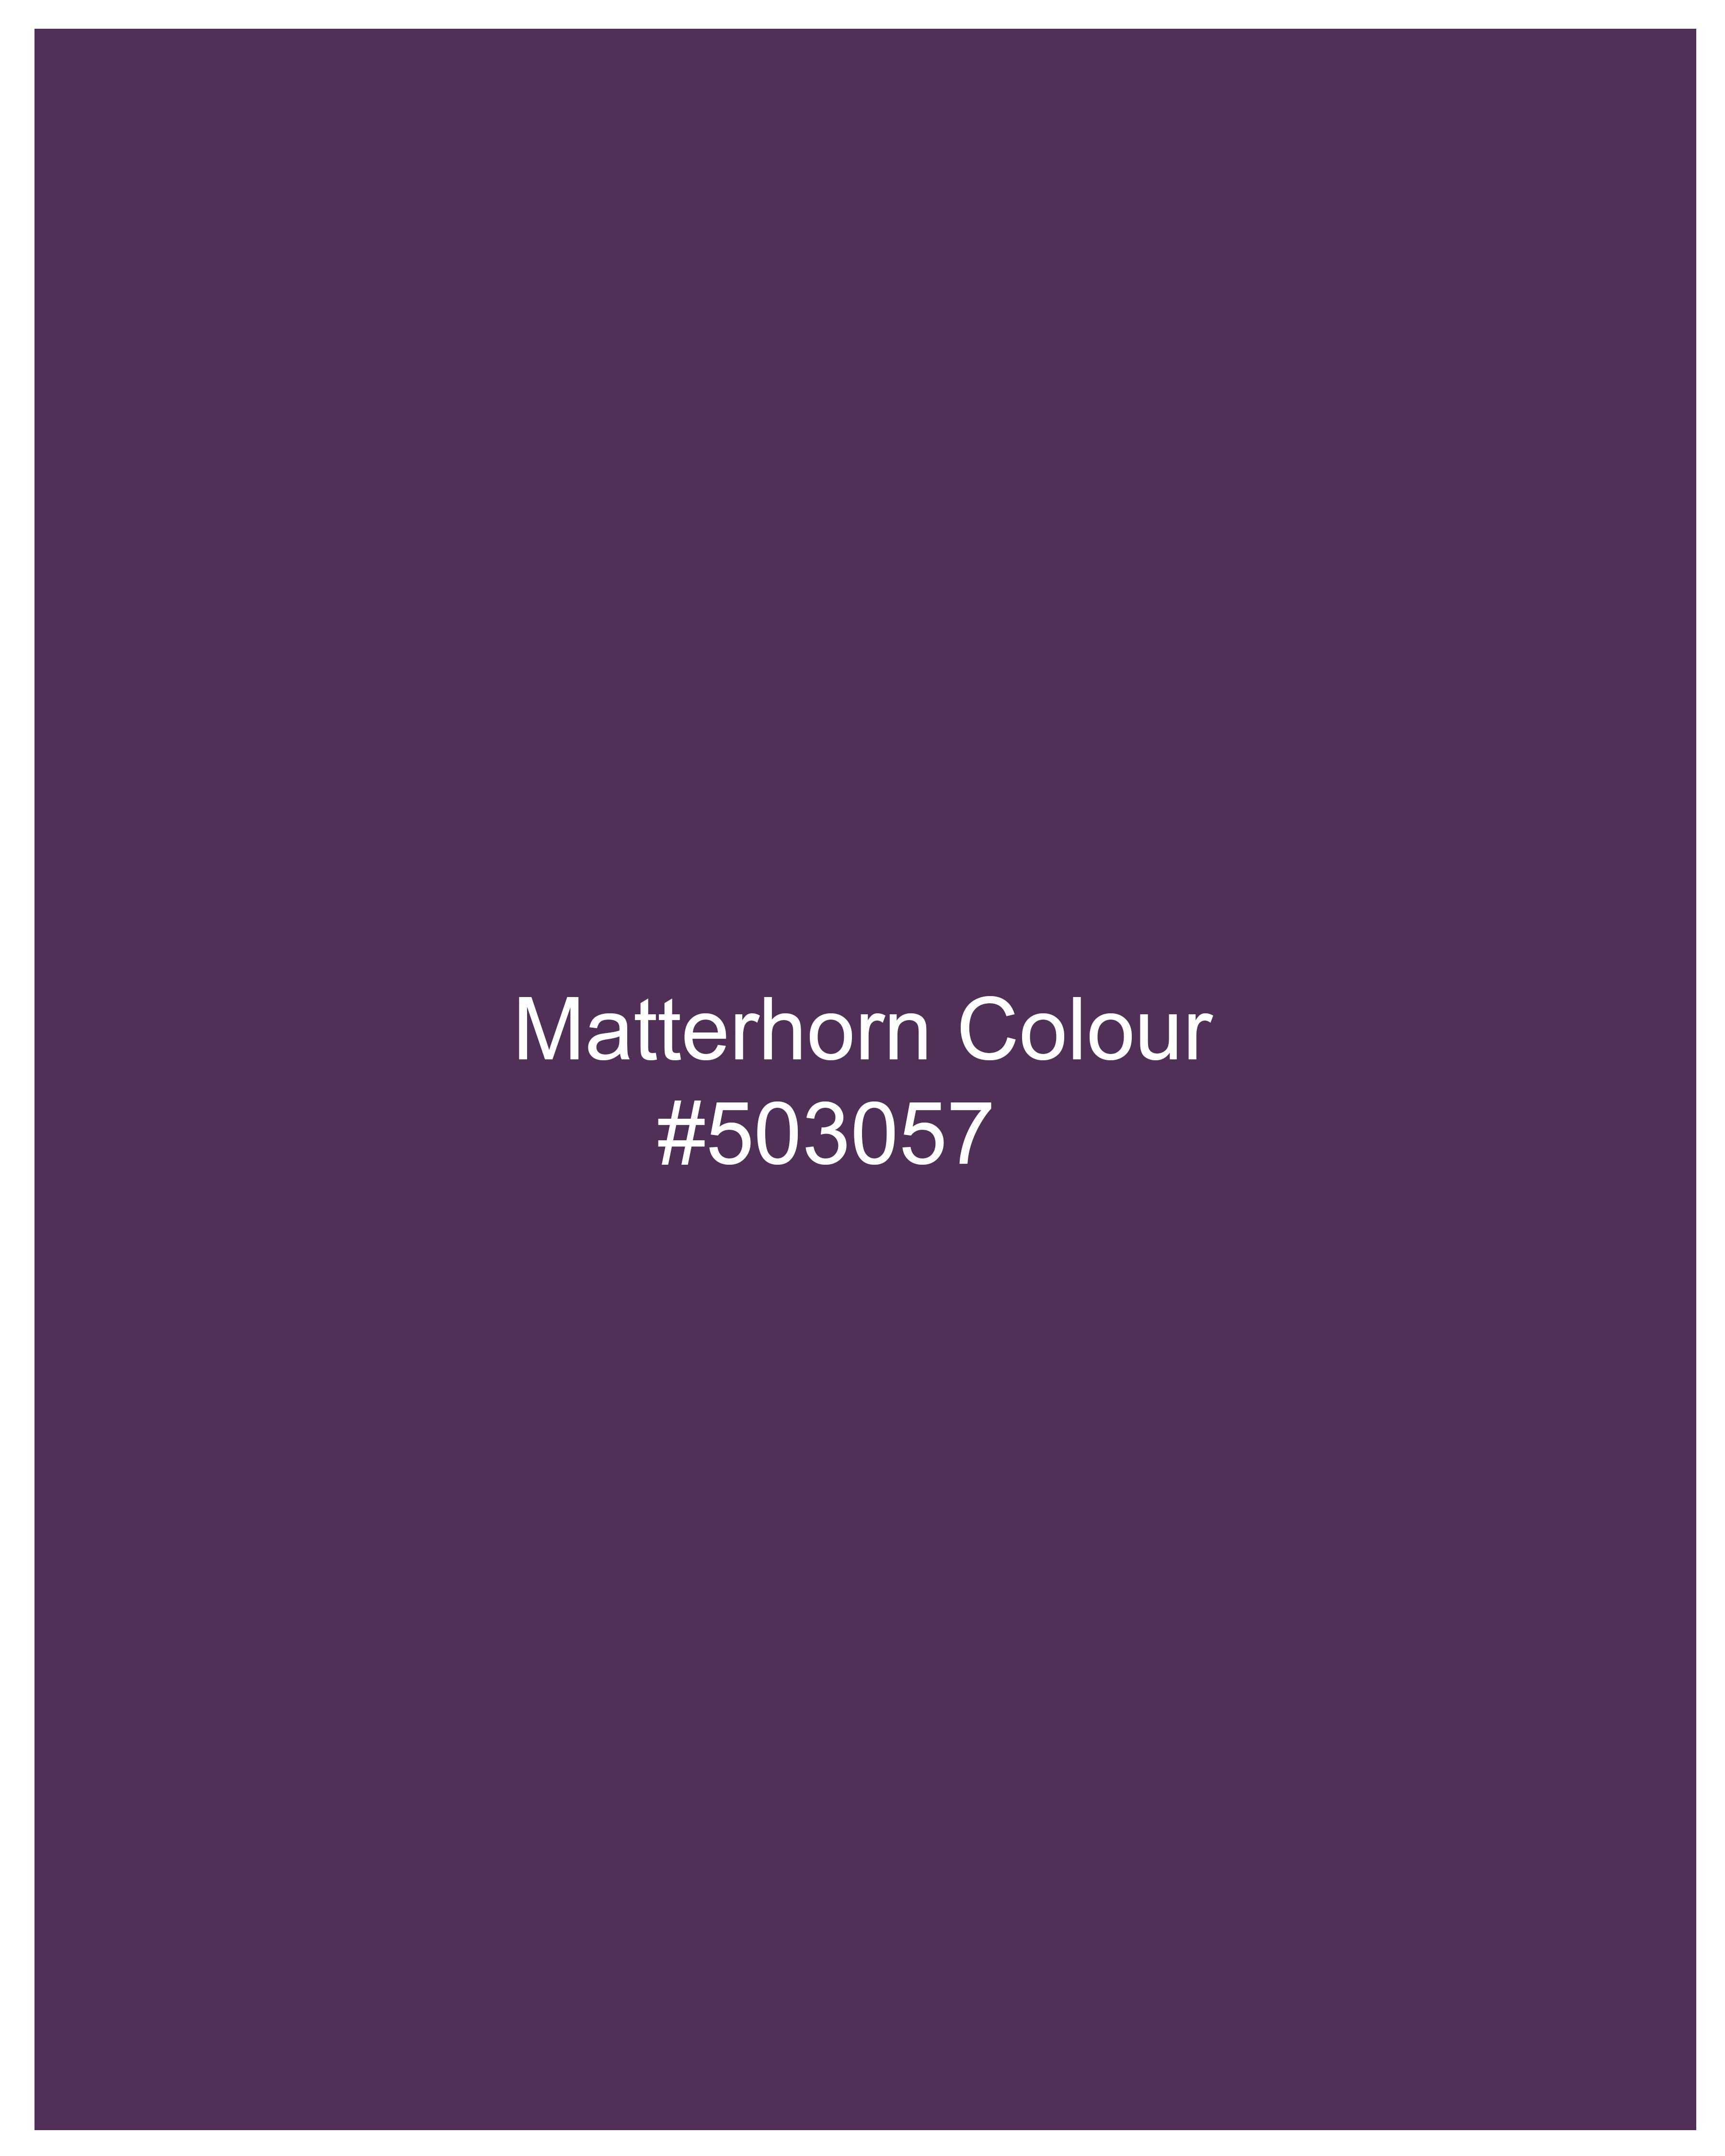 Matterhorn Purple with White Piping Work Royal Oxford Designer Kurta Shirt 9769-WOC-P447-38, 9769-WOC-P447-H-38, 9769-WOC-P447-39, 9769-WOC-P447-H-39, 9769-WOC-P447-40, 9769-WOC-P447-H-40, 9769-WOC-P447-42, 9769-WOC-P447-H-42, 9769-WOC-P447-44, 9769-WOC-P447-H-44, 9769-WOC-P447-46, 9769-WOC-P447-H-46, 9769-WOC-P447-48, 9769-WOC-P447-H-48, 9769-WOC-P447-50, 9769-WOC-P447-H-50, 9769-WOC-P447-52, 9769-WOC-P447-H-52